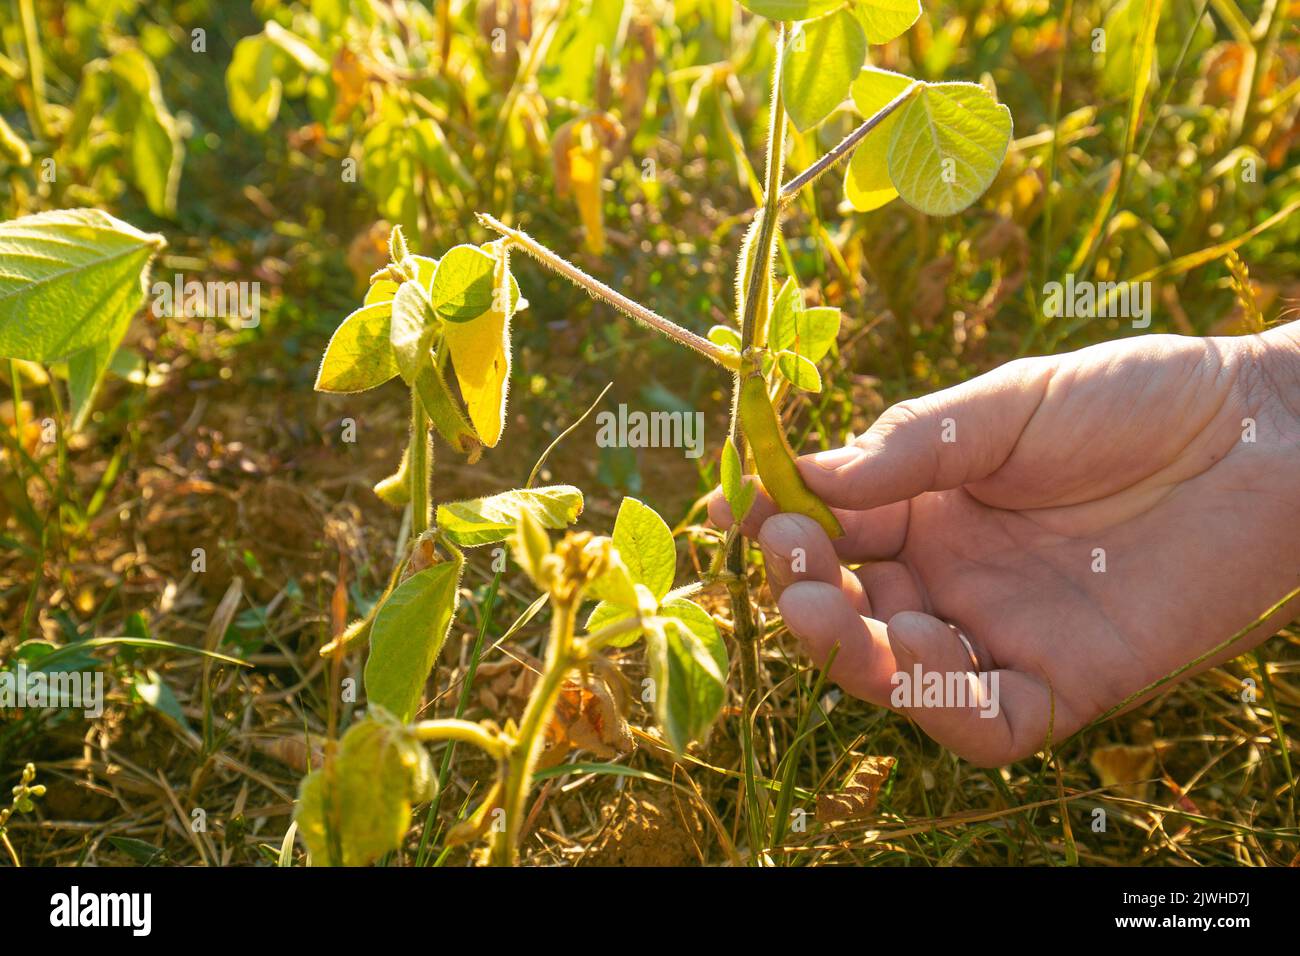 Sojabohnen-Ernte.Pods von reifen Sojabohnen in einer weiblichen Hand.Feld von reifen Sojabohnen.der Landwirt überprüft die Sojabohnen auf Reife.Landwirt in Sojabohnen-Feld Stockfoto